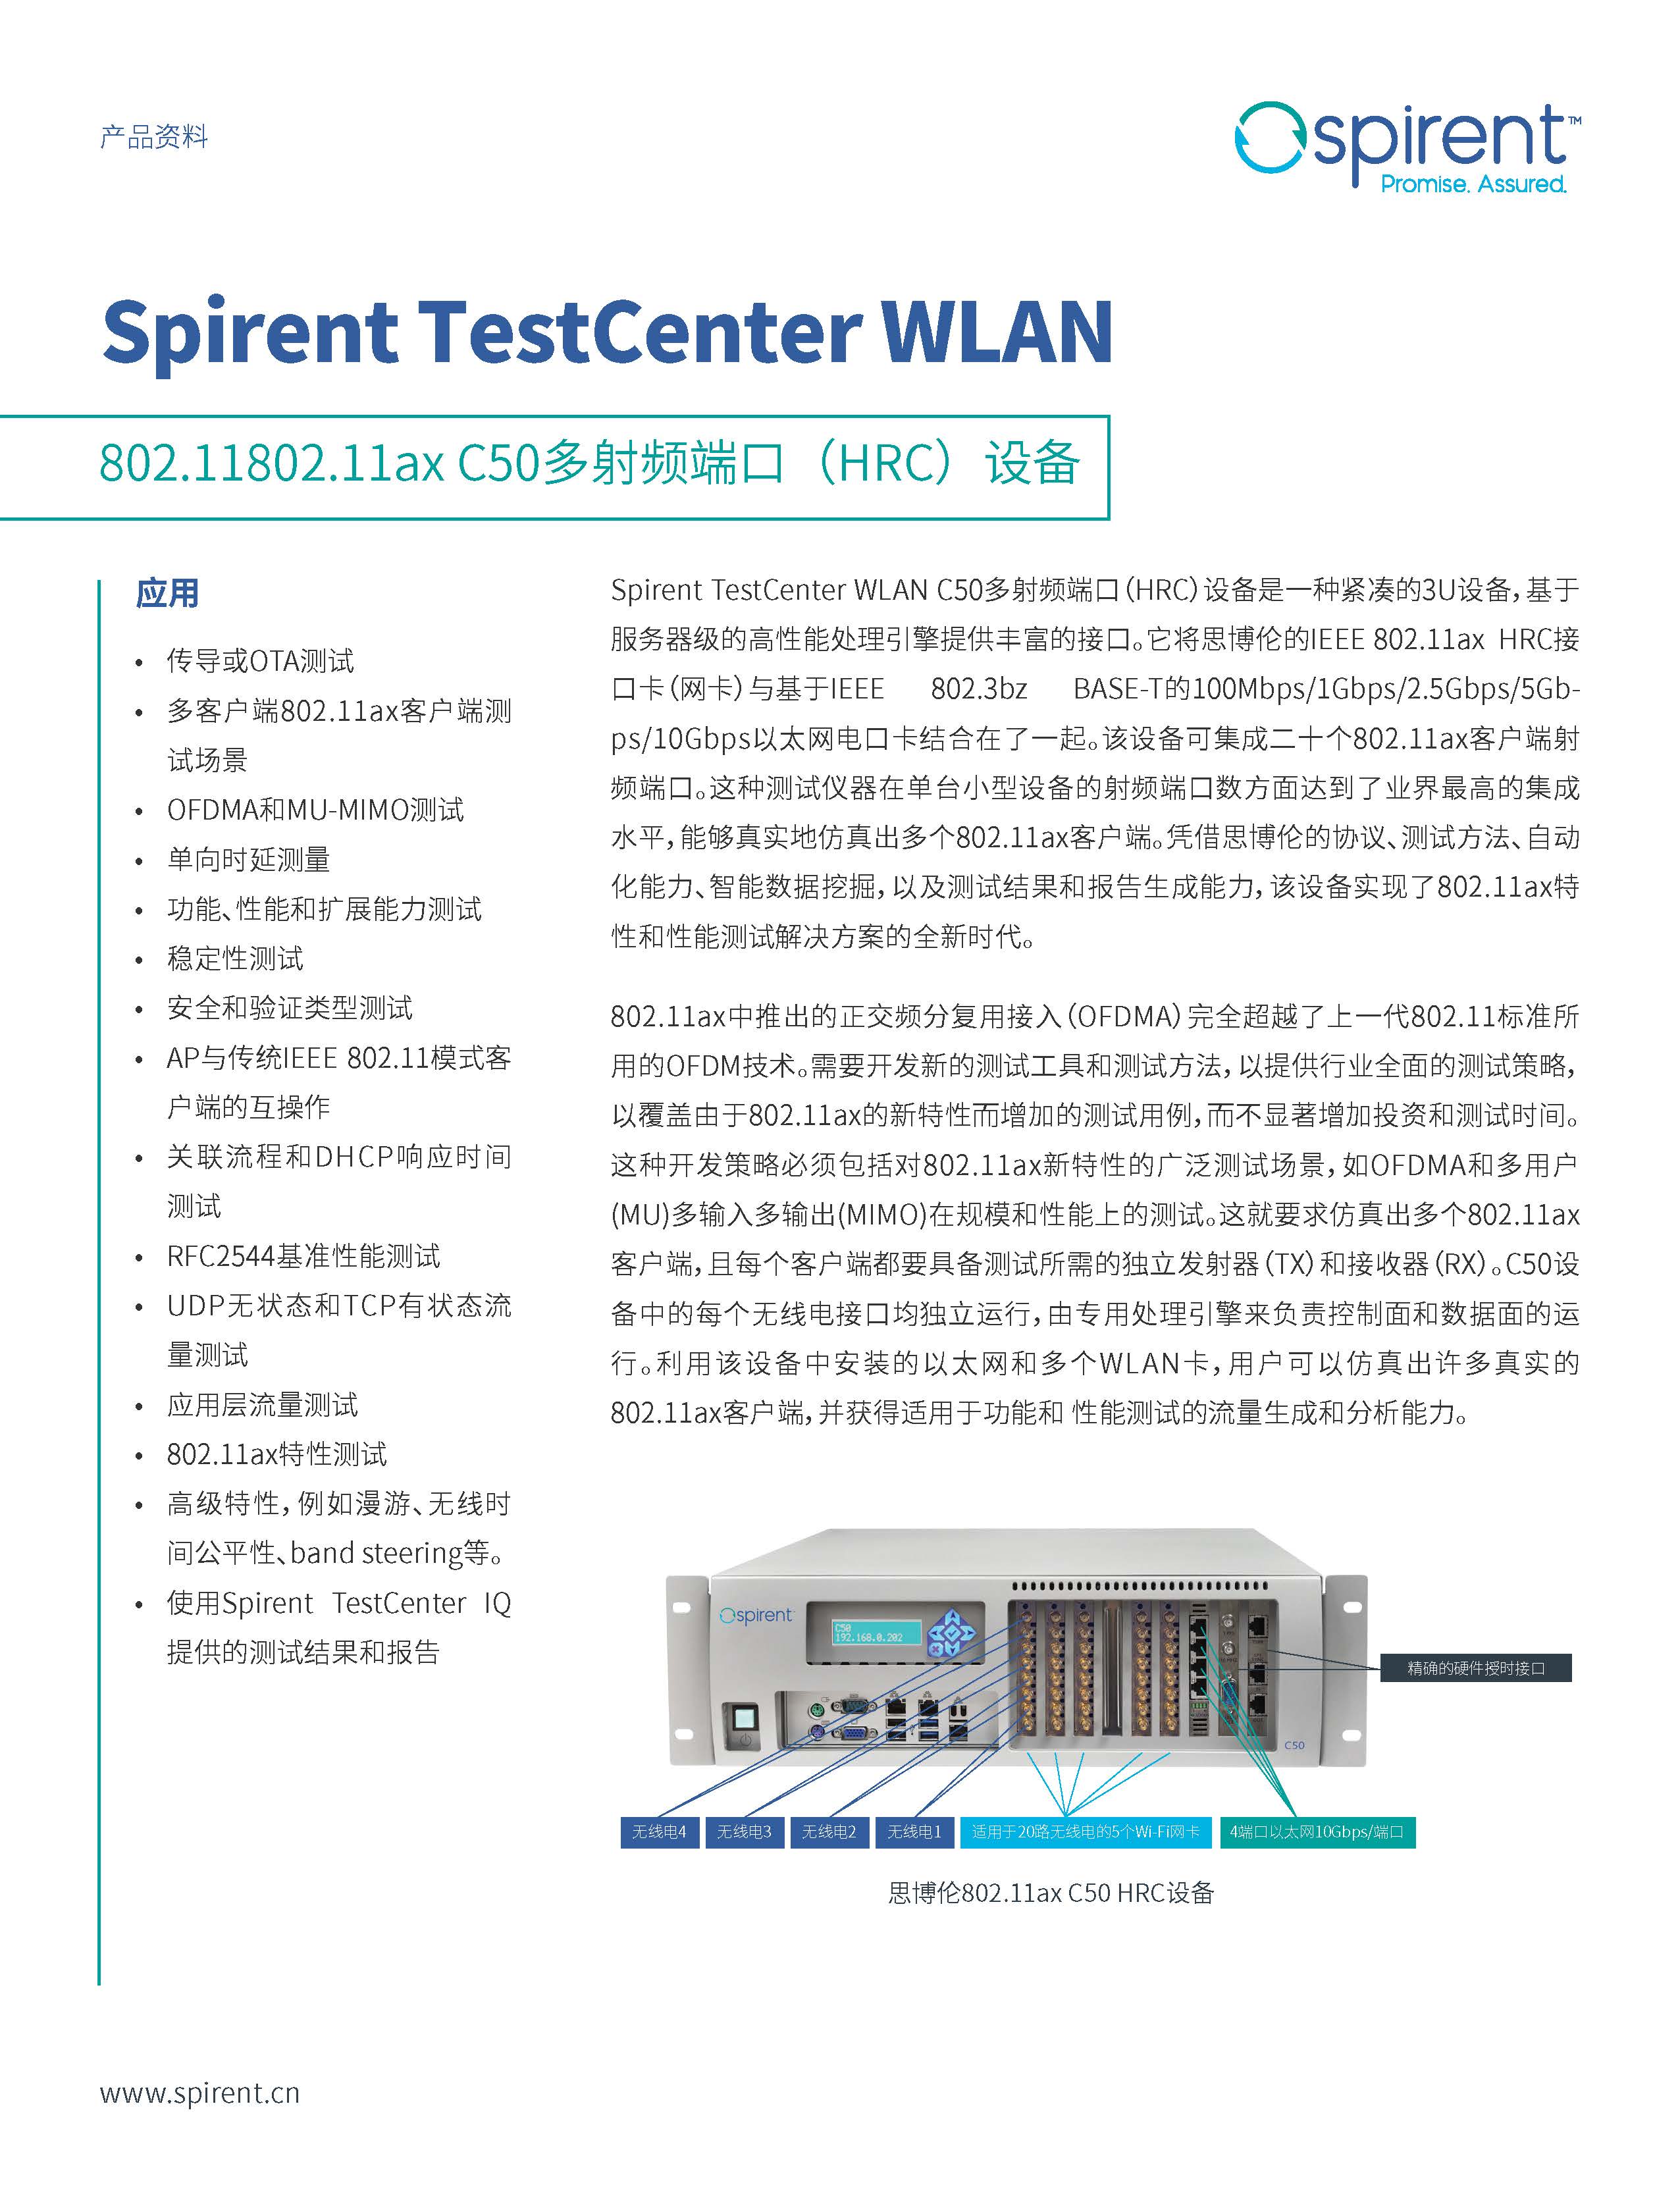 中文更新2-DS-Spirent-TestCenter-WLAN-C50-11AX-HRC_页面_1.jpg